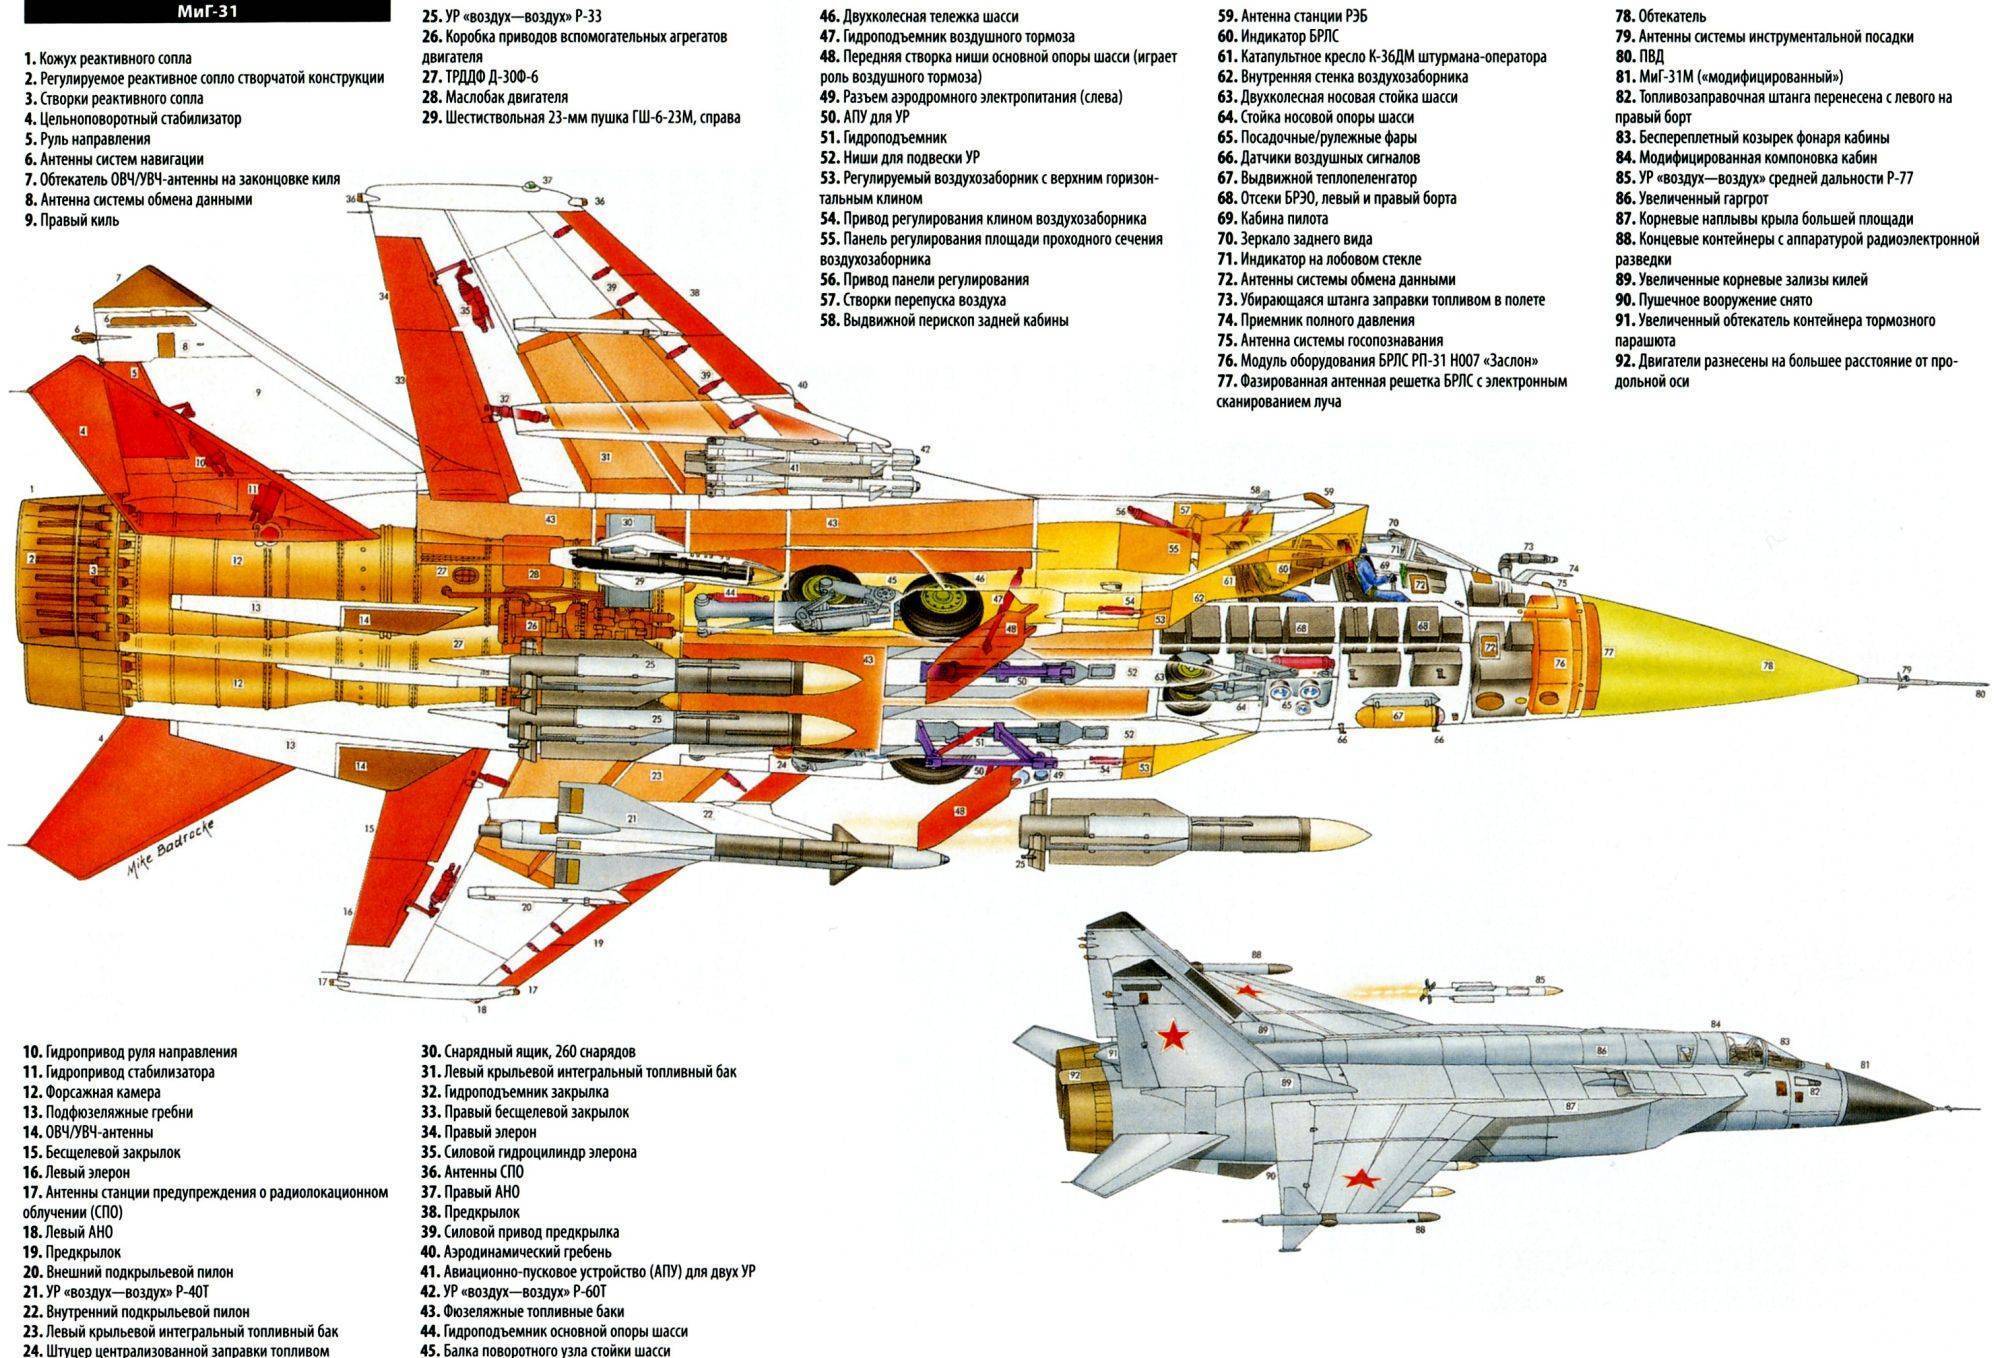 Миг-17. фото и видео, история, характеристики самолета